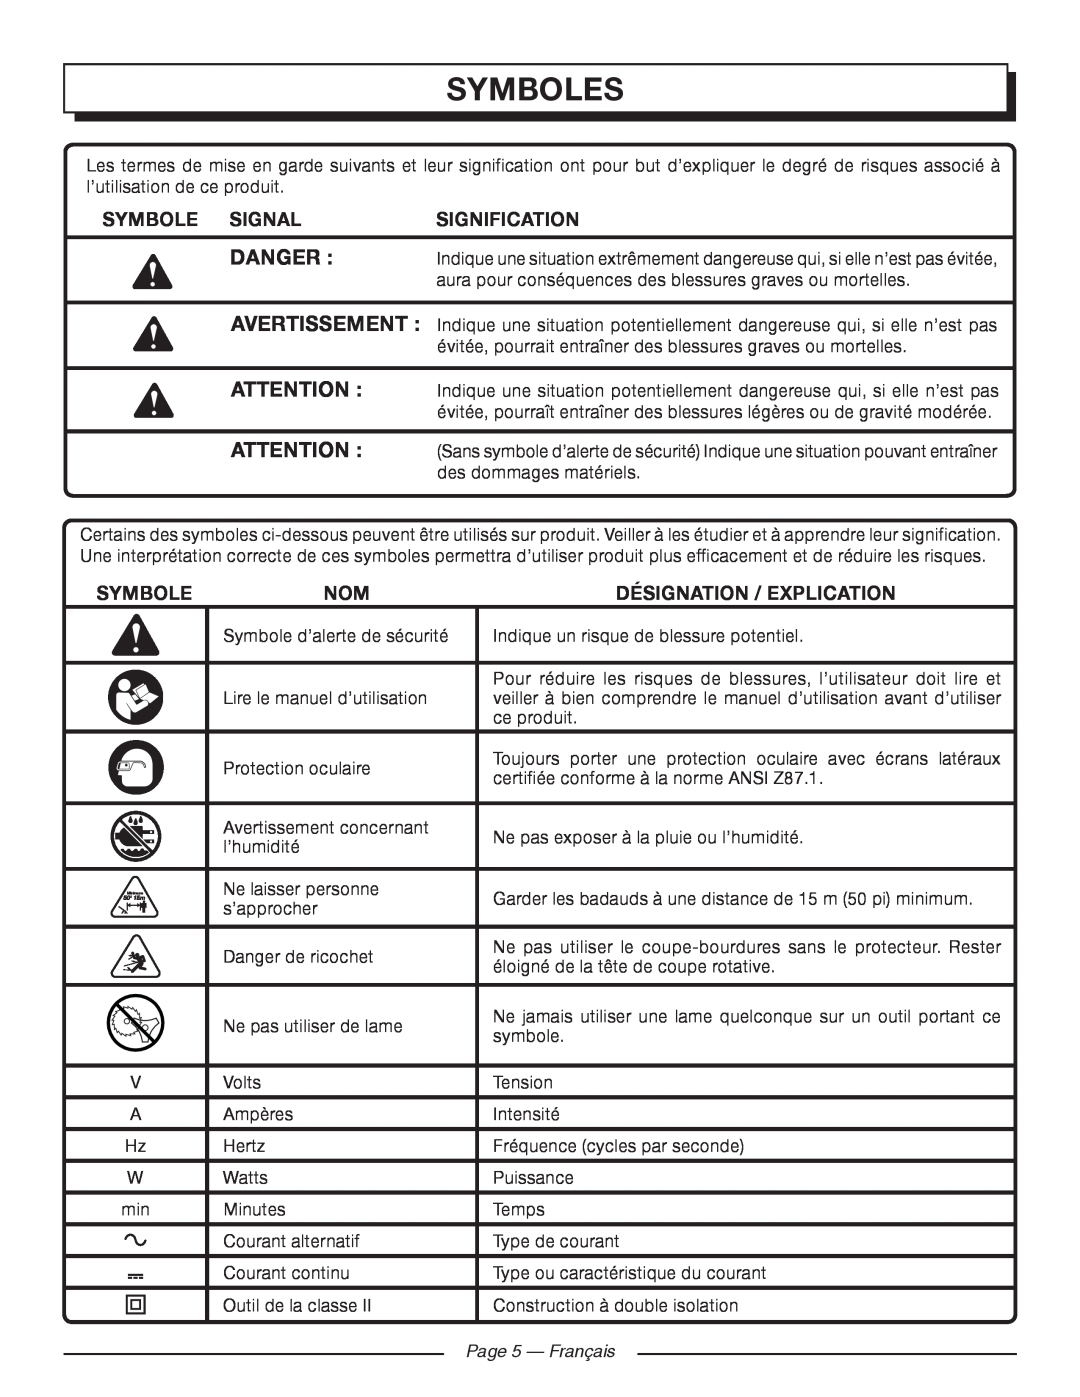 Homelite UT41120 Symboles, Danger , Symbole Signal, Signification, Désignation / Explication, Page 5 - Français 